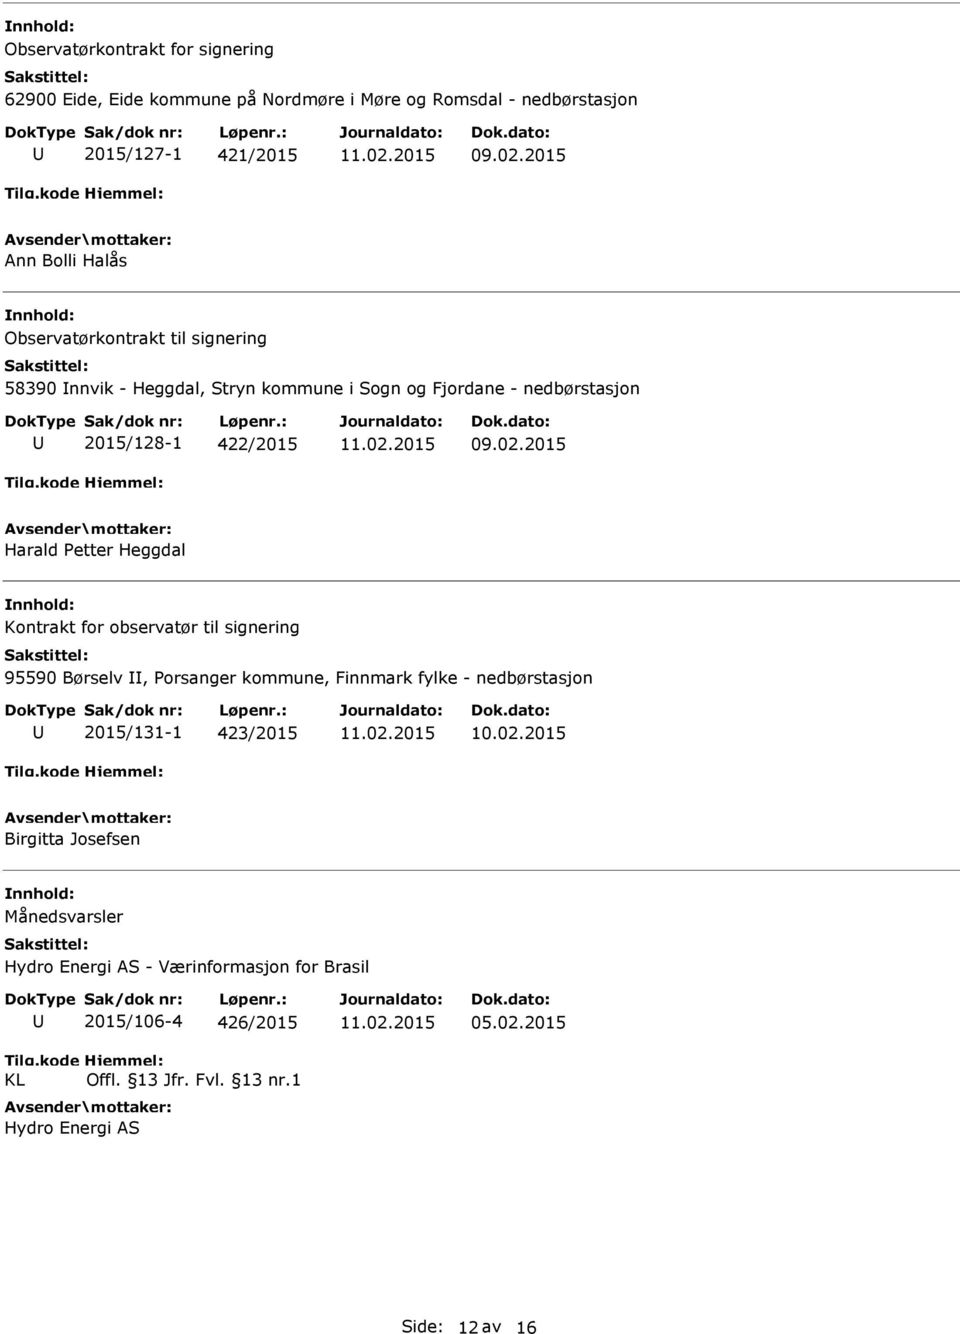 Heggdal Kontrakt for observatør til signering 95590 Børselv, orsanger kommune, Finnmark fylke - nedbørstasjon 2015/131-1 423/2015 Birgitta